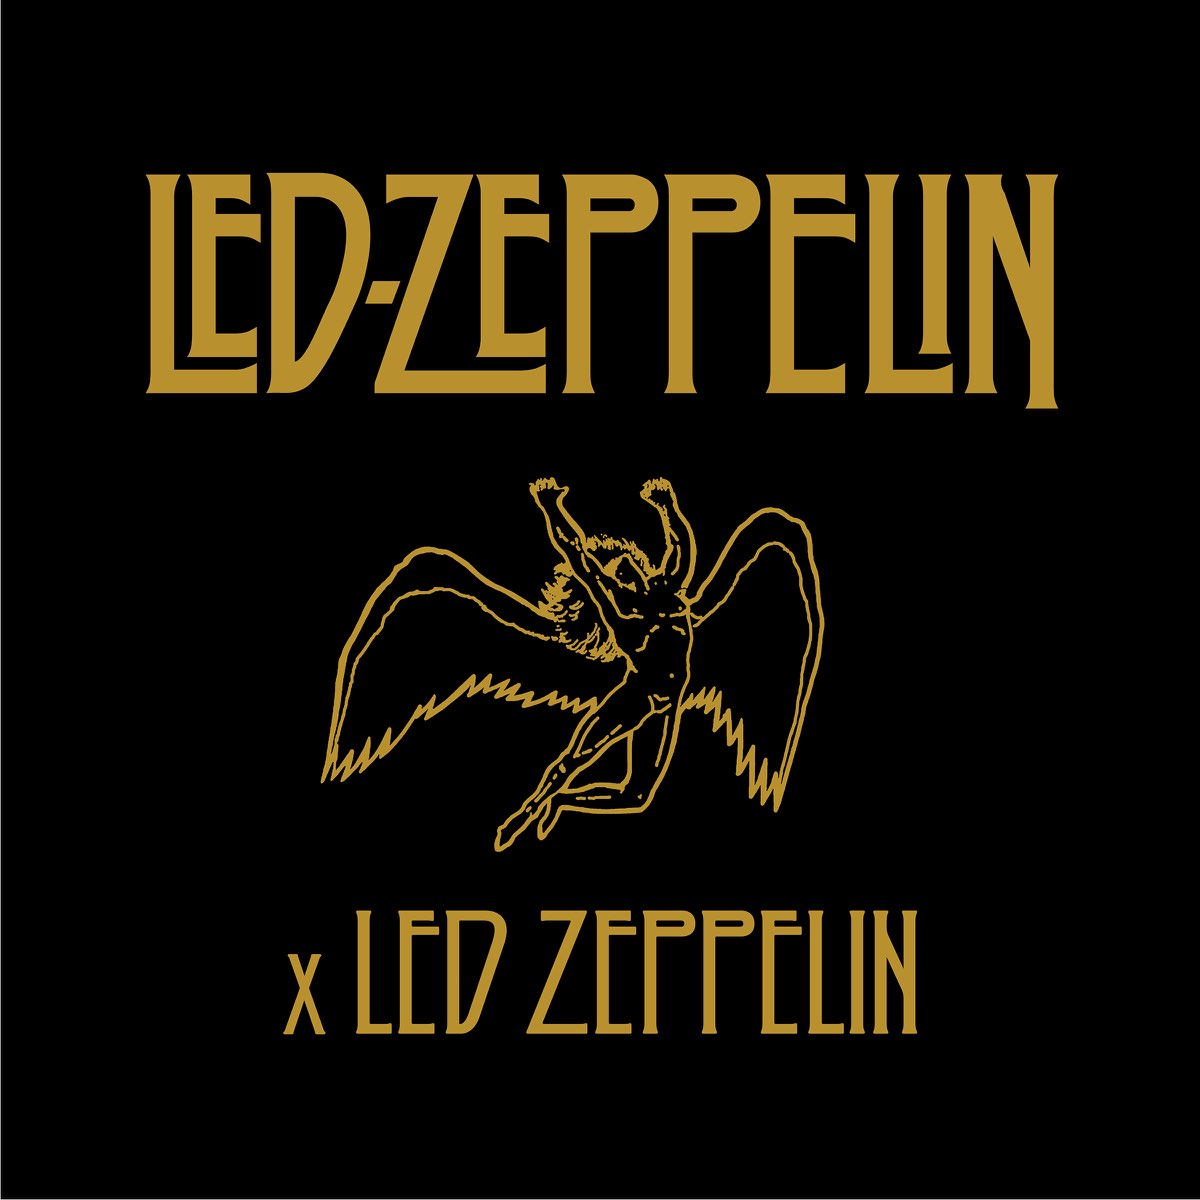 Led Zeppelinの「Led Zeppelin x Led Zeppelin」をApple Musicで